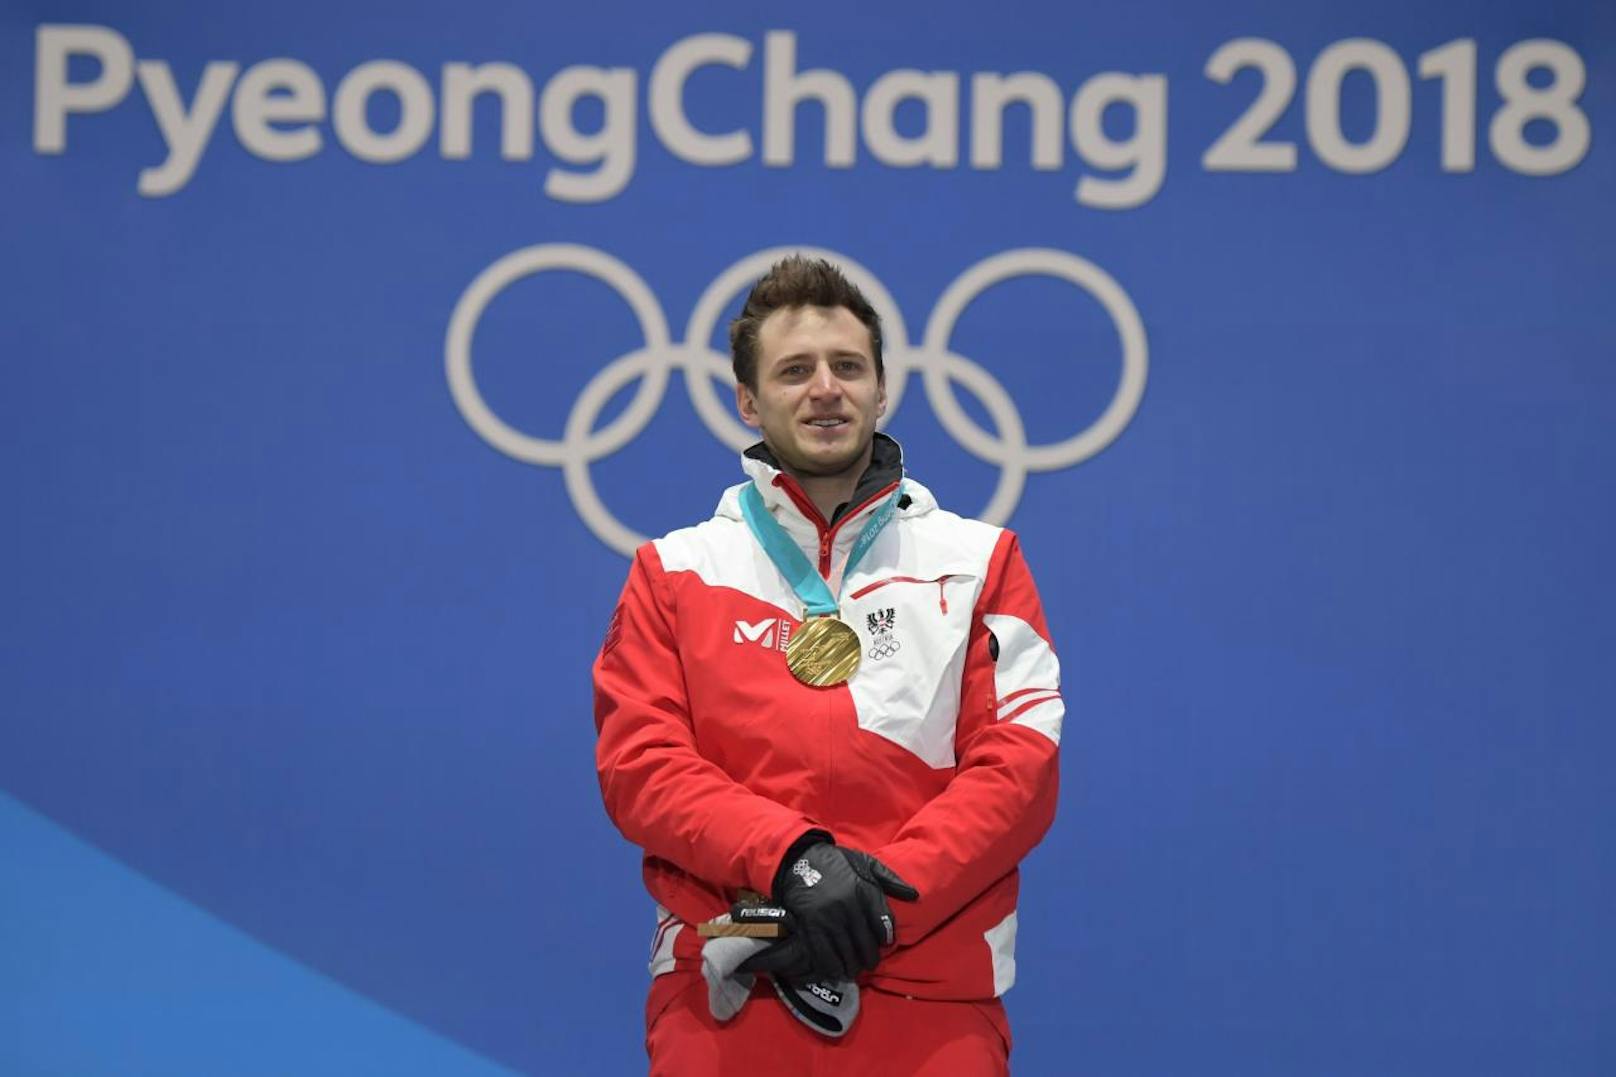 Olympische Spiele - und Matthias Mayer ist da! Der Kärntner krallte sich nach dem Abfahrts-Titel 2014 in Pyeongchang 2018 die Goldmedaille im Super-G.